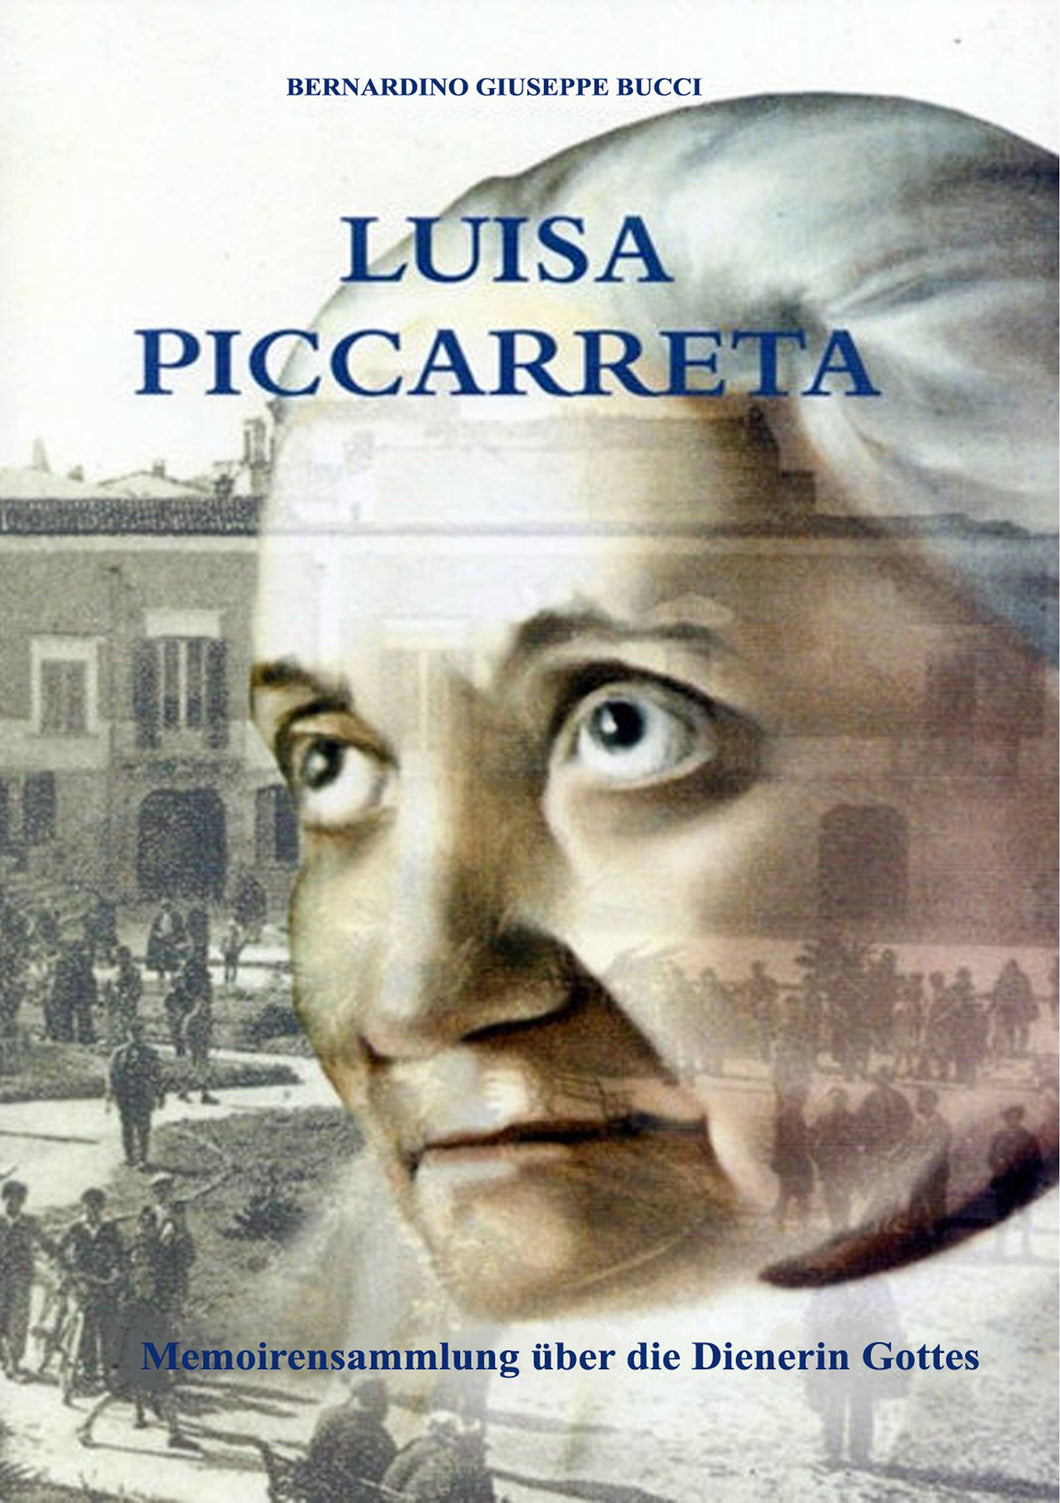 Biografía Luisa Piccarreta - colección de memorias